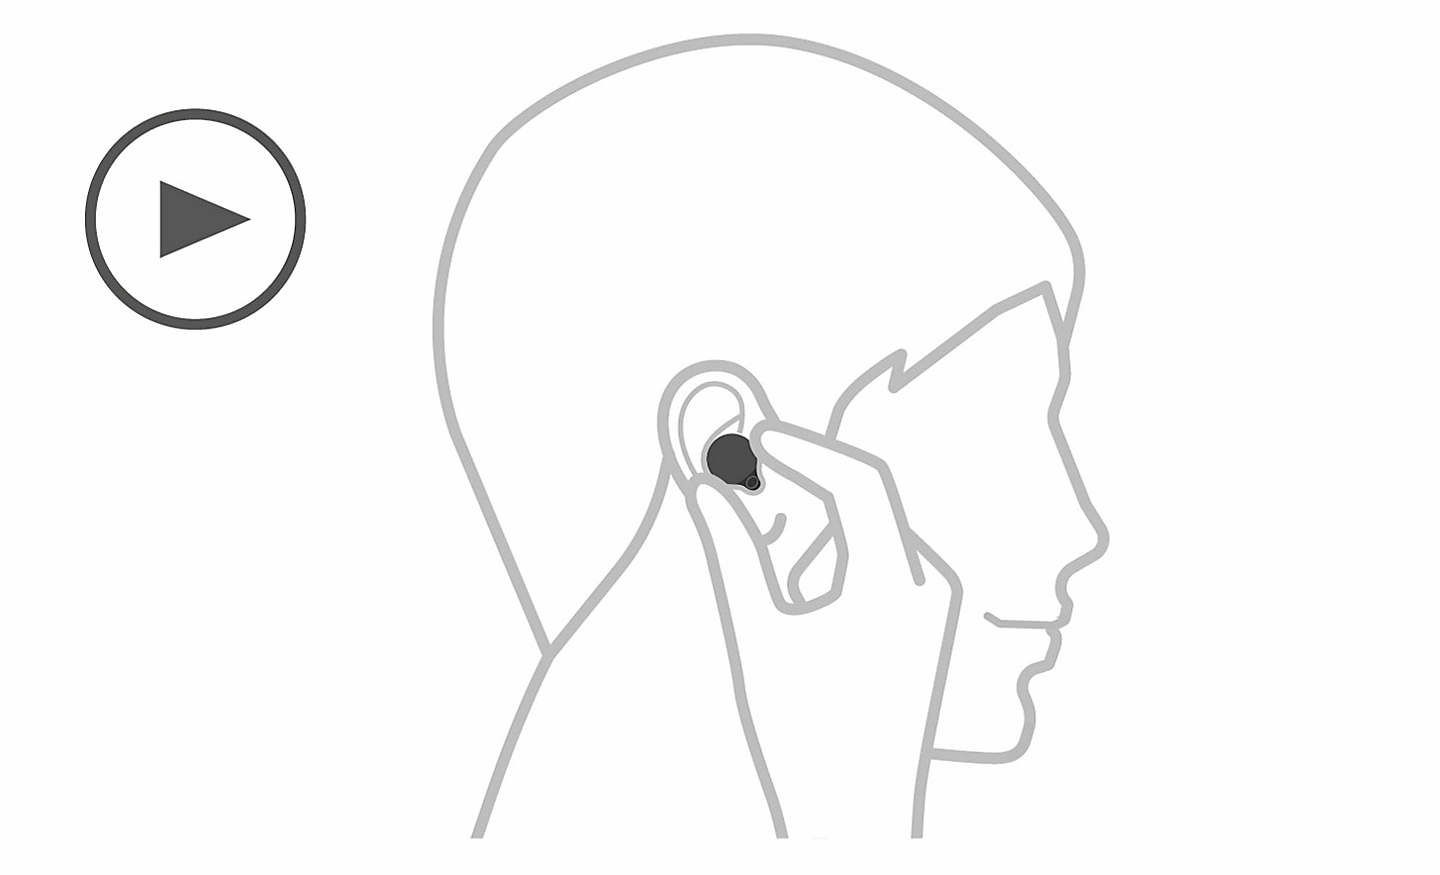 Kresba hlavy, vľavo je ikona prehrávania a ruka, ktorá slúchadlo nasadzuje do ucha